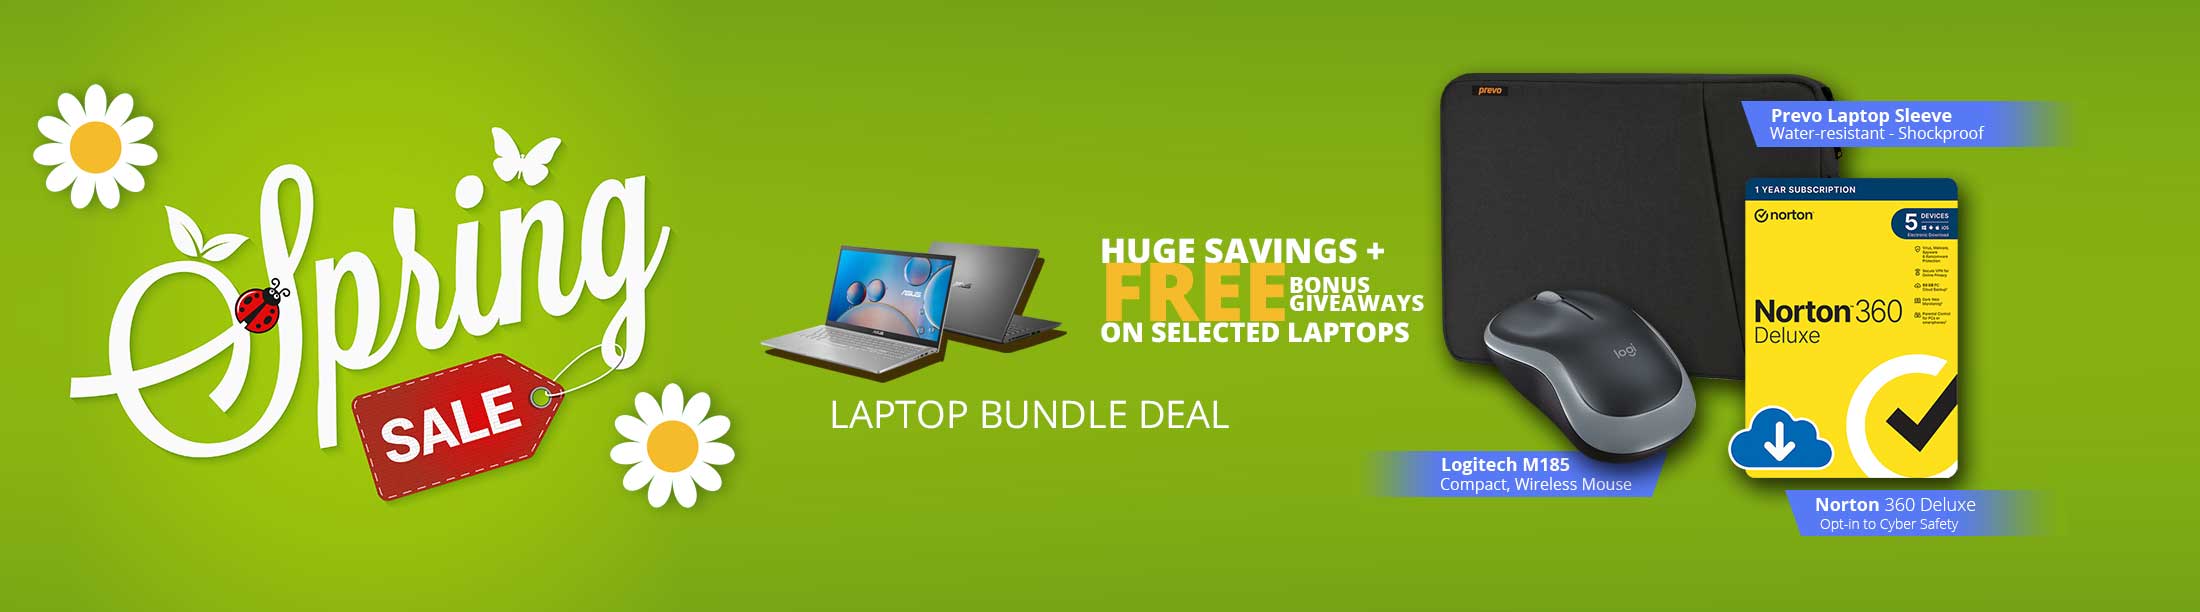 MESH Spring Laptop Bundle Deal.